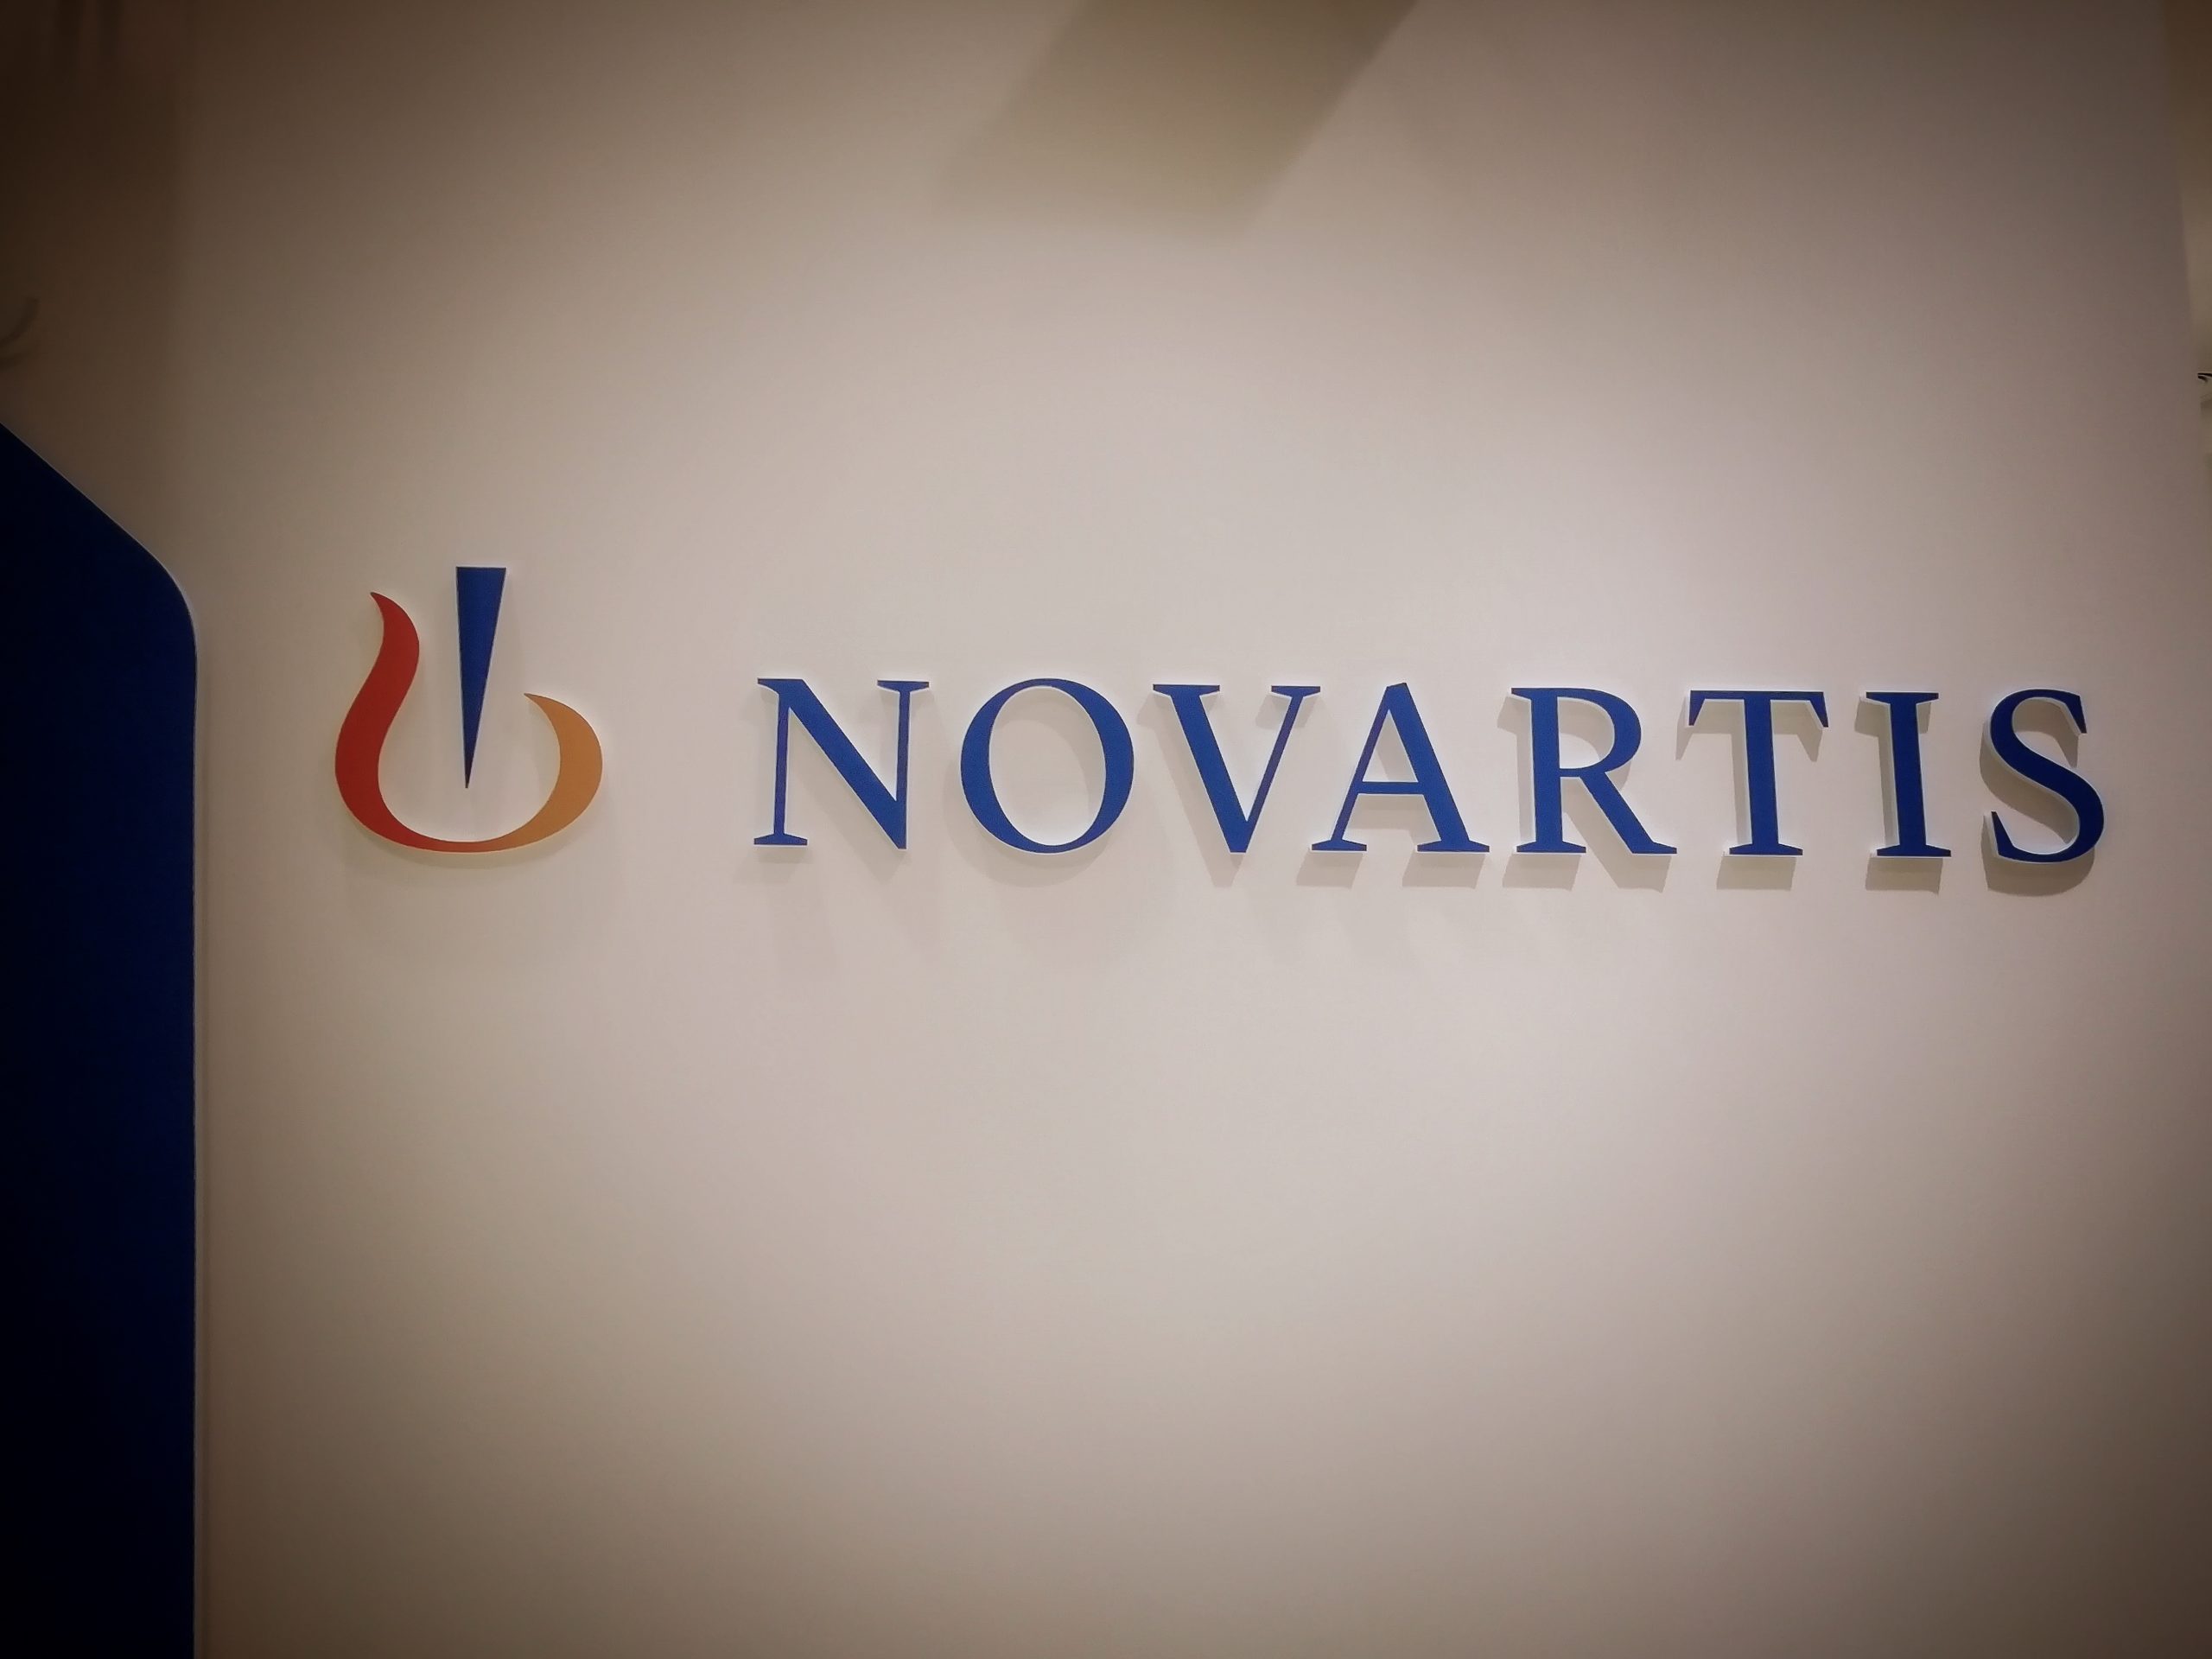 Σκάνδαλο Novartis: Μια ιστορία διαφθοράς, εγκλήματος και διώξεων